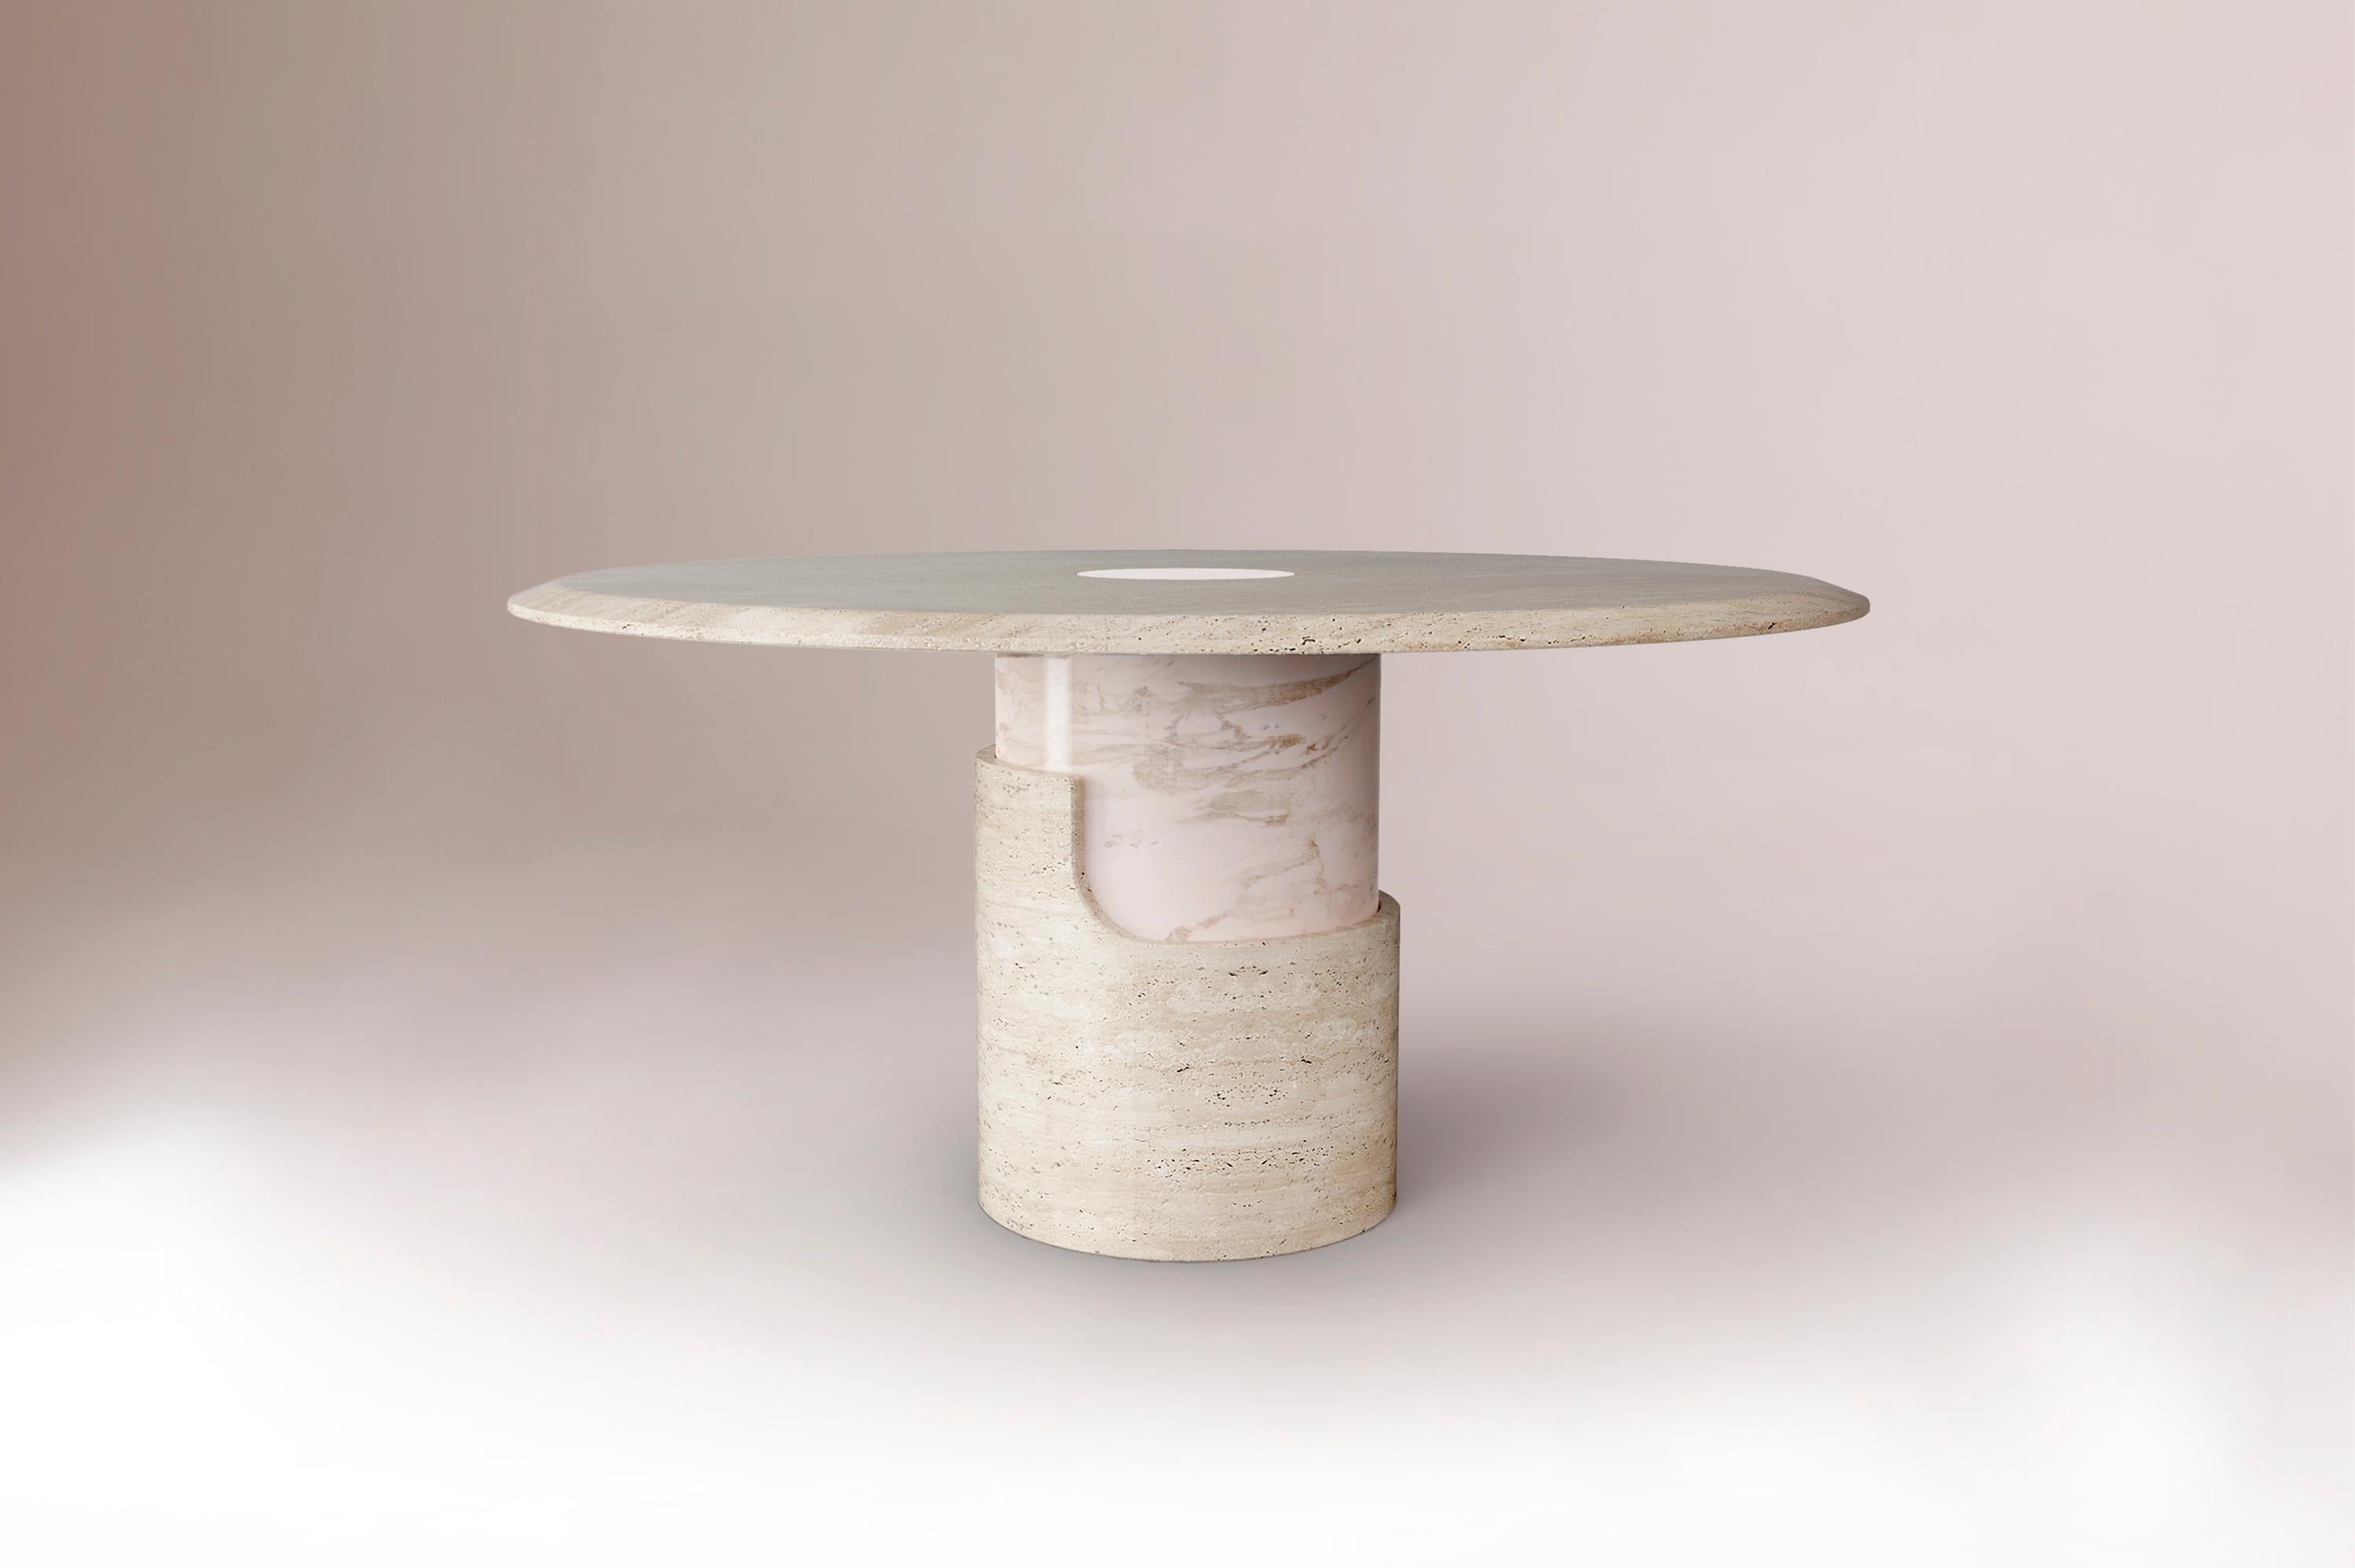 Braque 120 Table de salle à manger contemporaine par DOOQ
Dimensions :  D 120 x H 55 cm
MATERIAL : Entièrement réalisé à la main en marbre

Produit
La table d'appoint Braque est une table d'appoint élégante et raffinée créée par DOOQ. Braque est